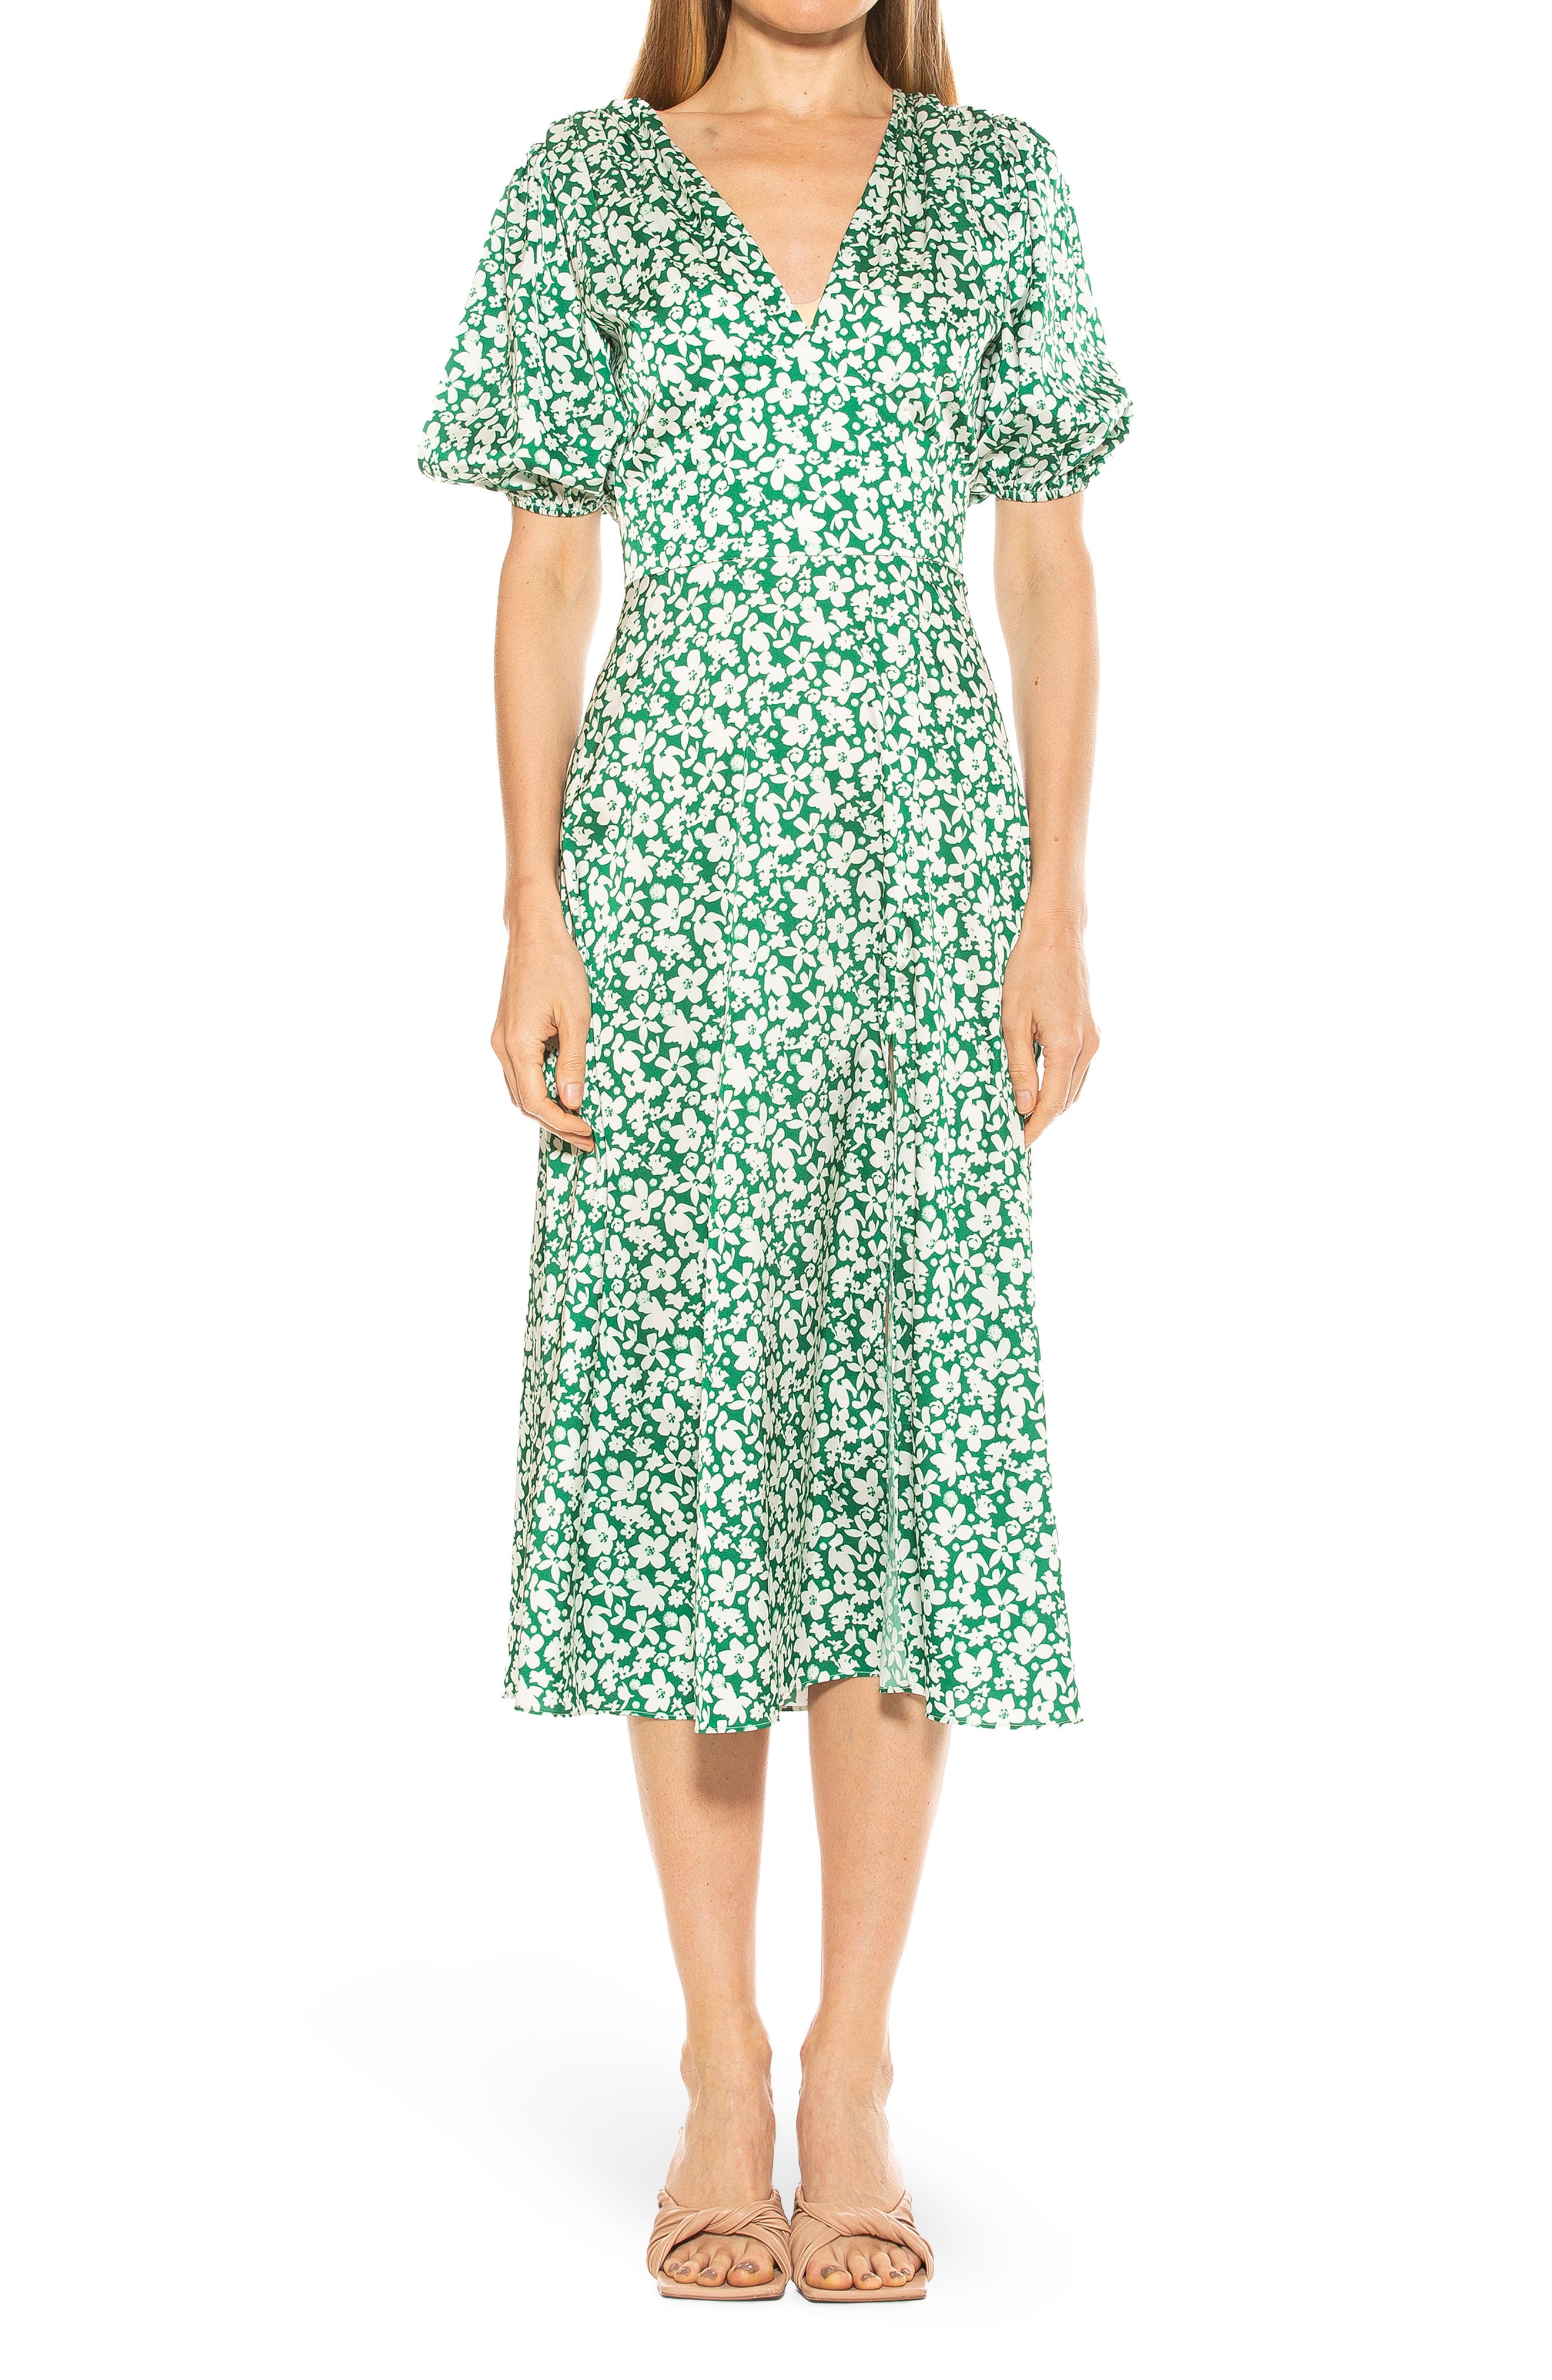 Green Floral Dresses | Nordstrom Rack